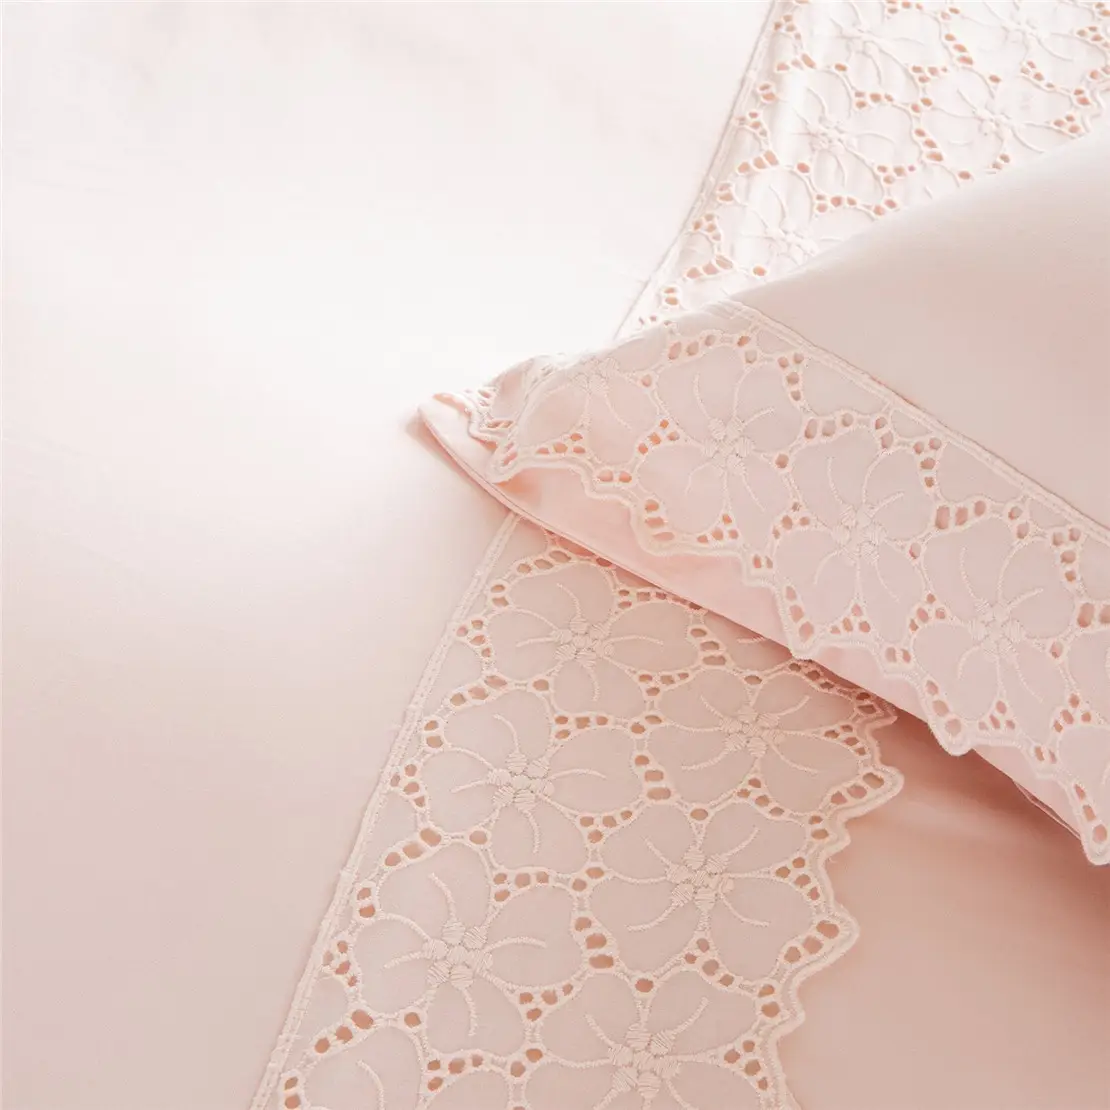 Комплект постельного белья персиково-розовый 200х220 Pastel